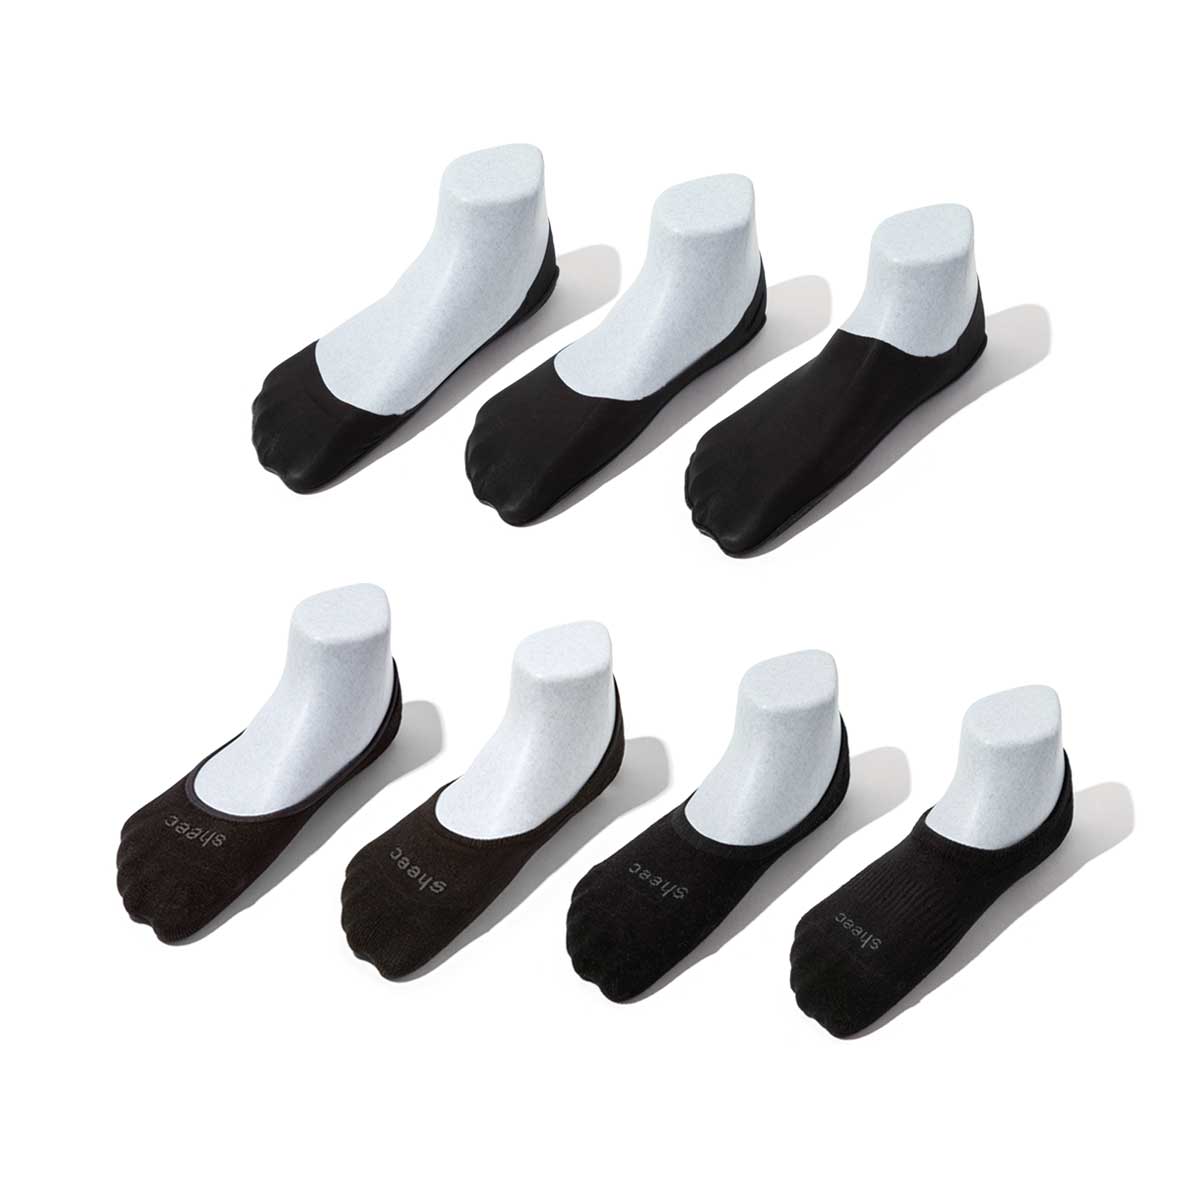 Casual Socks Variety Pack | Variety of Socks for Men | Sheec – Sheec Socks